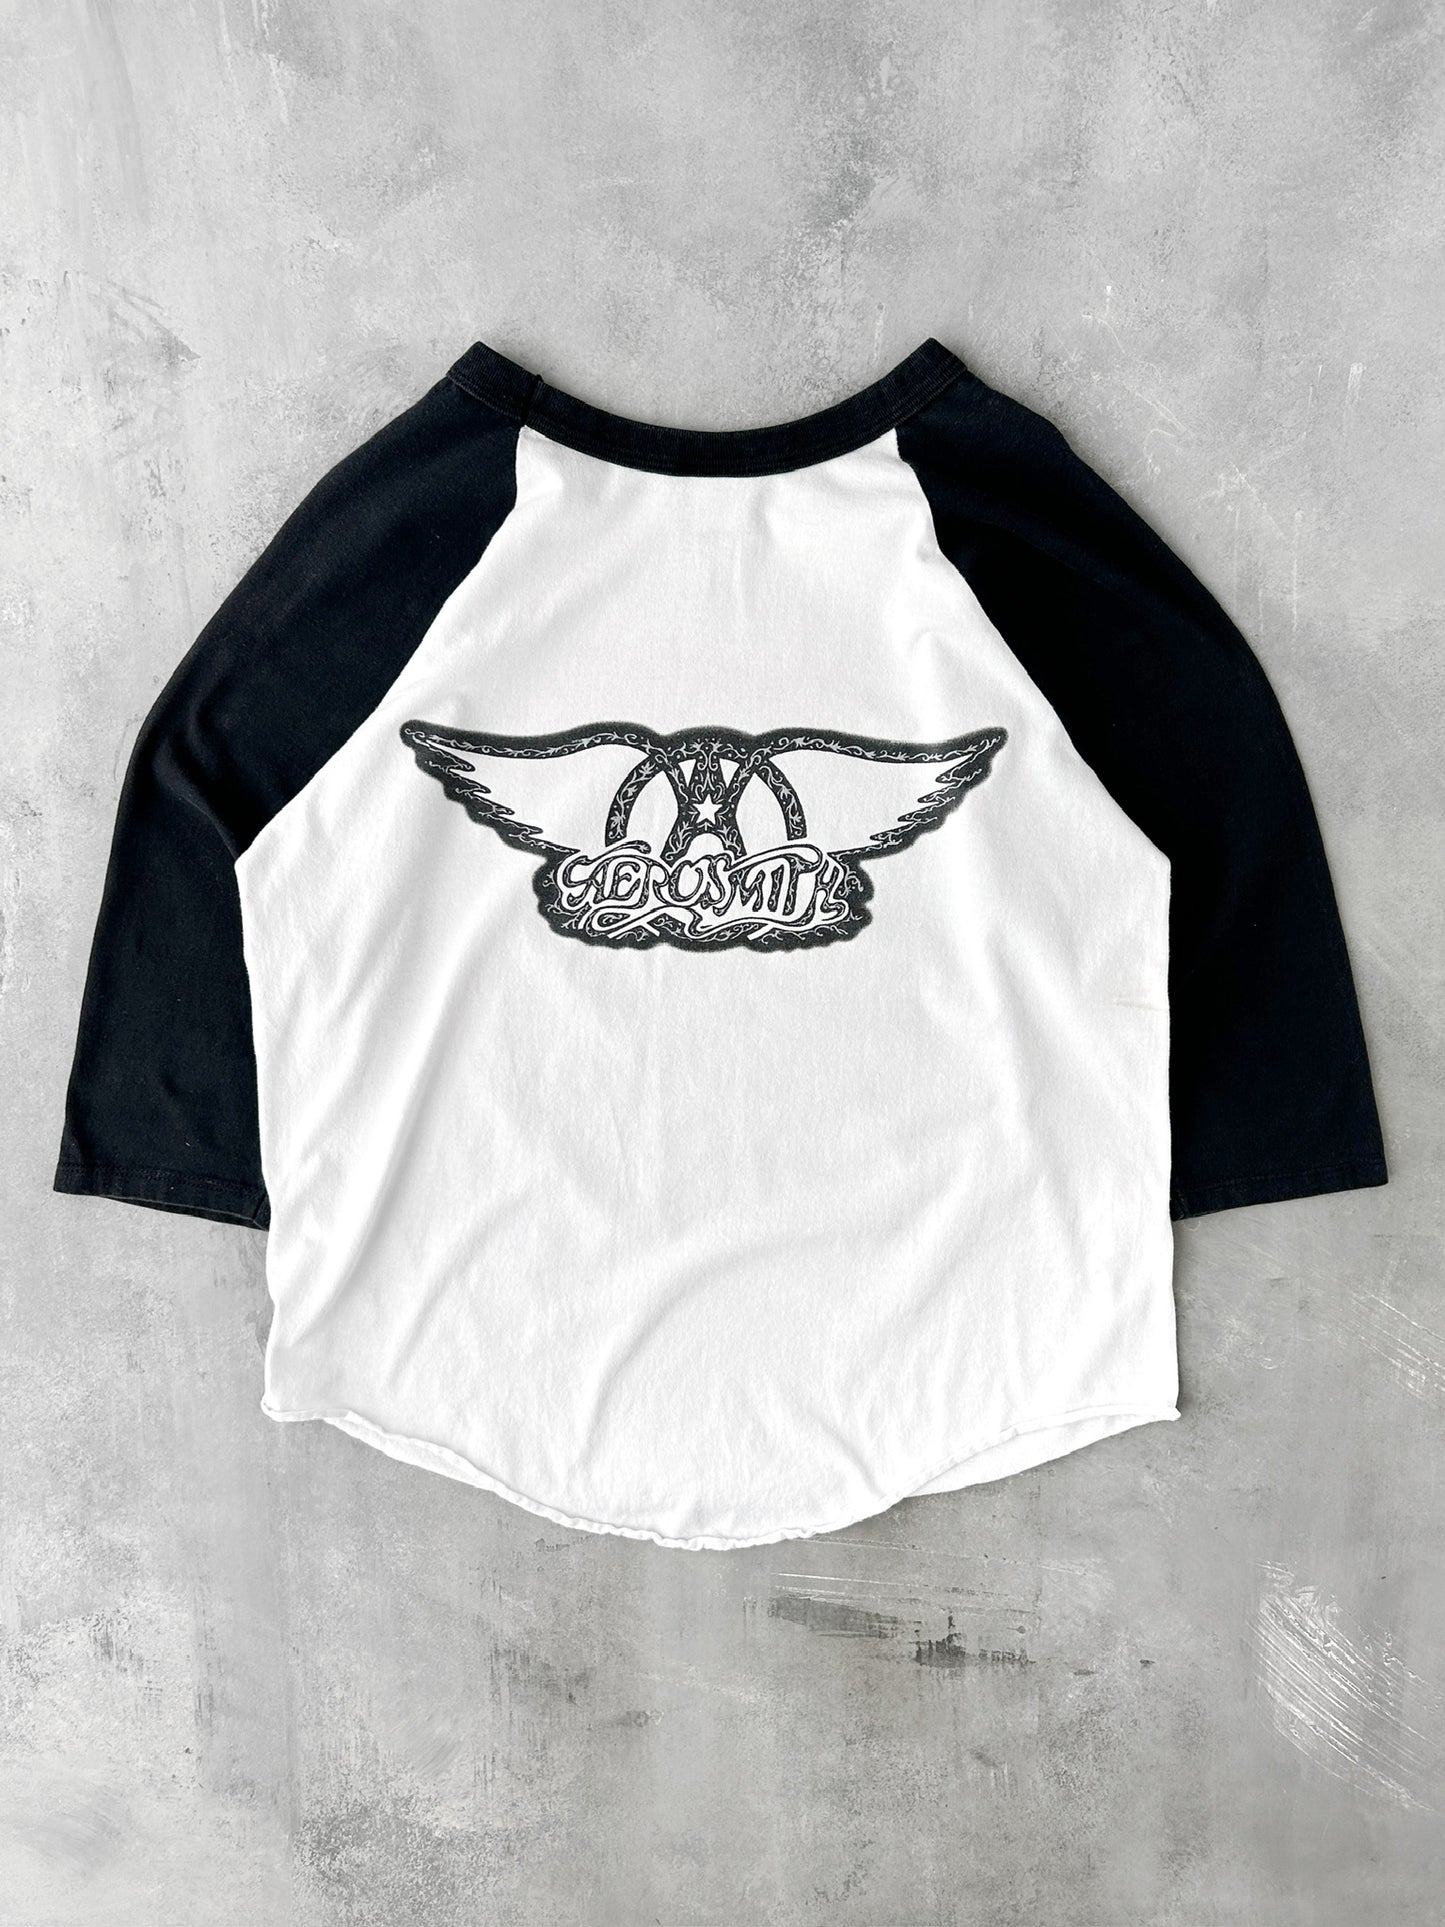 Aerosmith Baseball T-Shirt '97 - Large